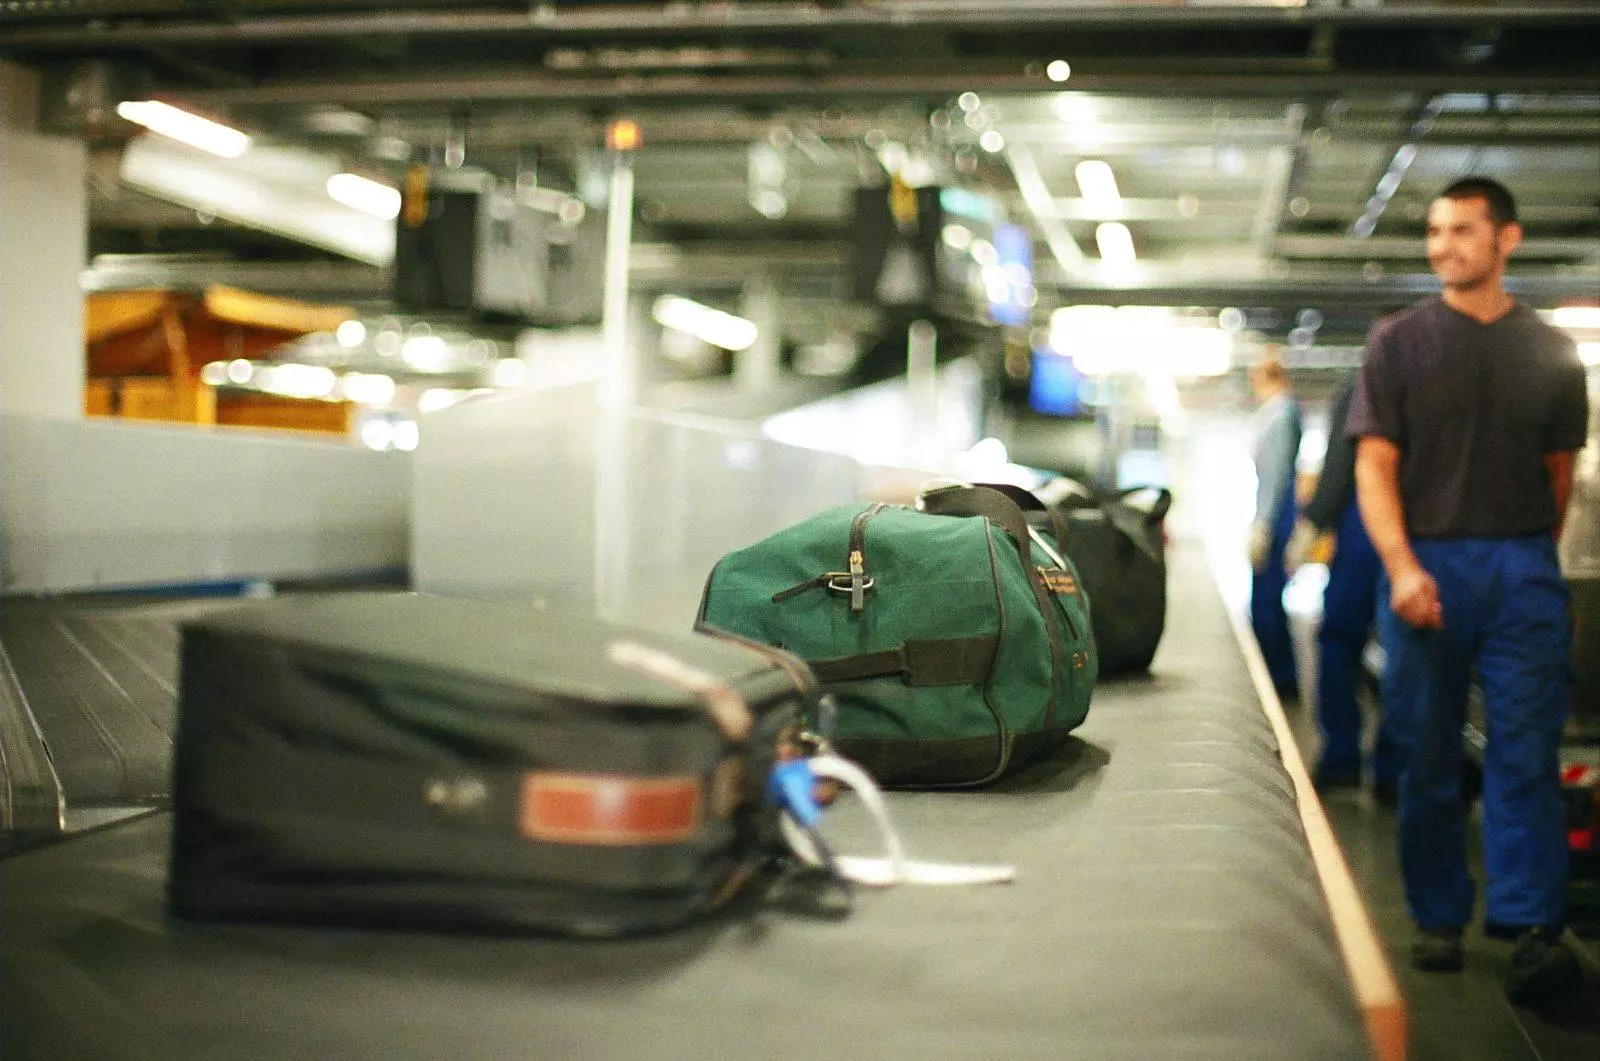 Утеря багажа в аэропорту: что делать, если потерялся чемодан, как получить компенсацию, как уберечь свои вещи